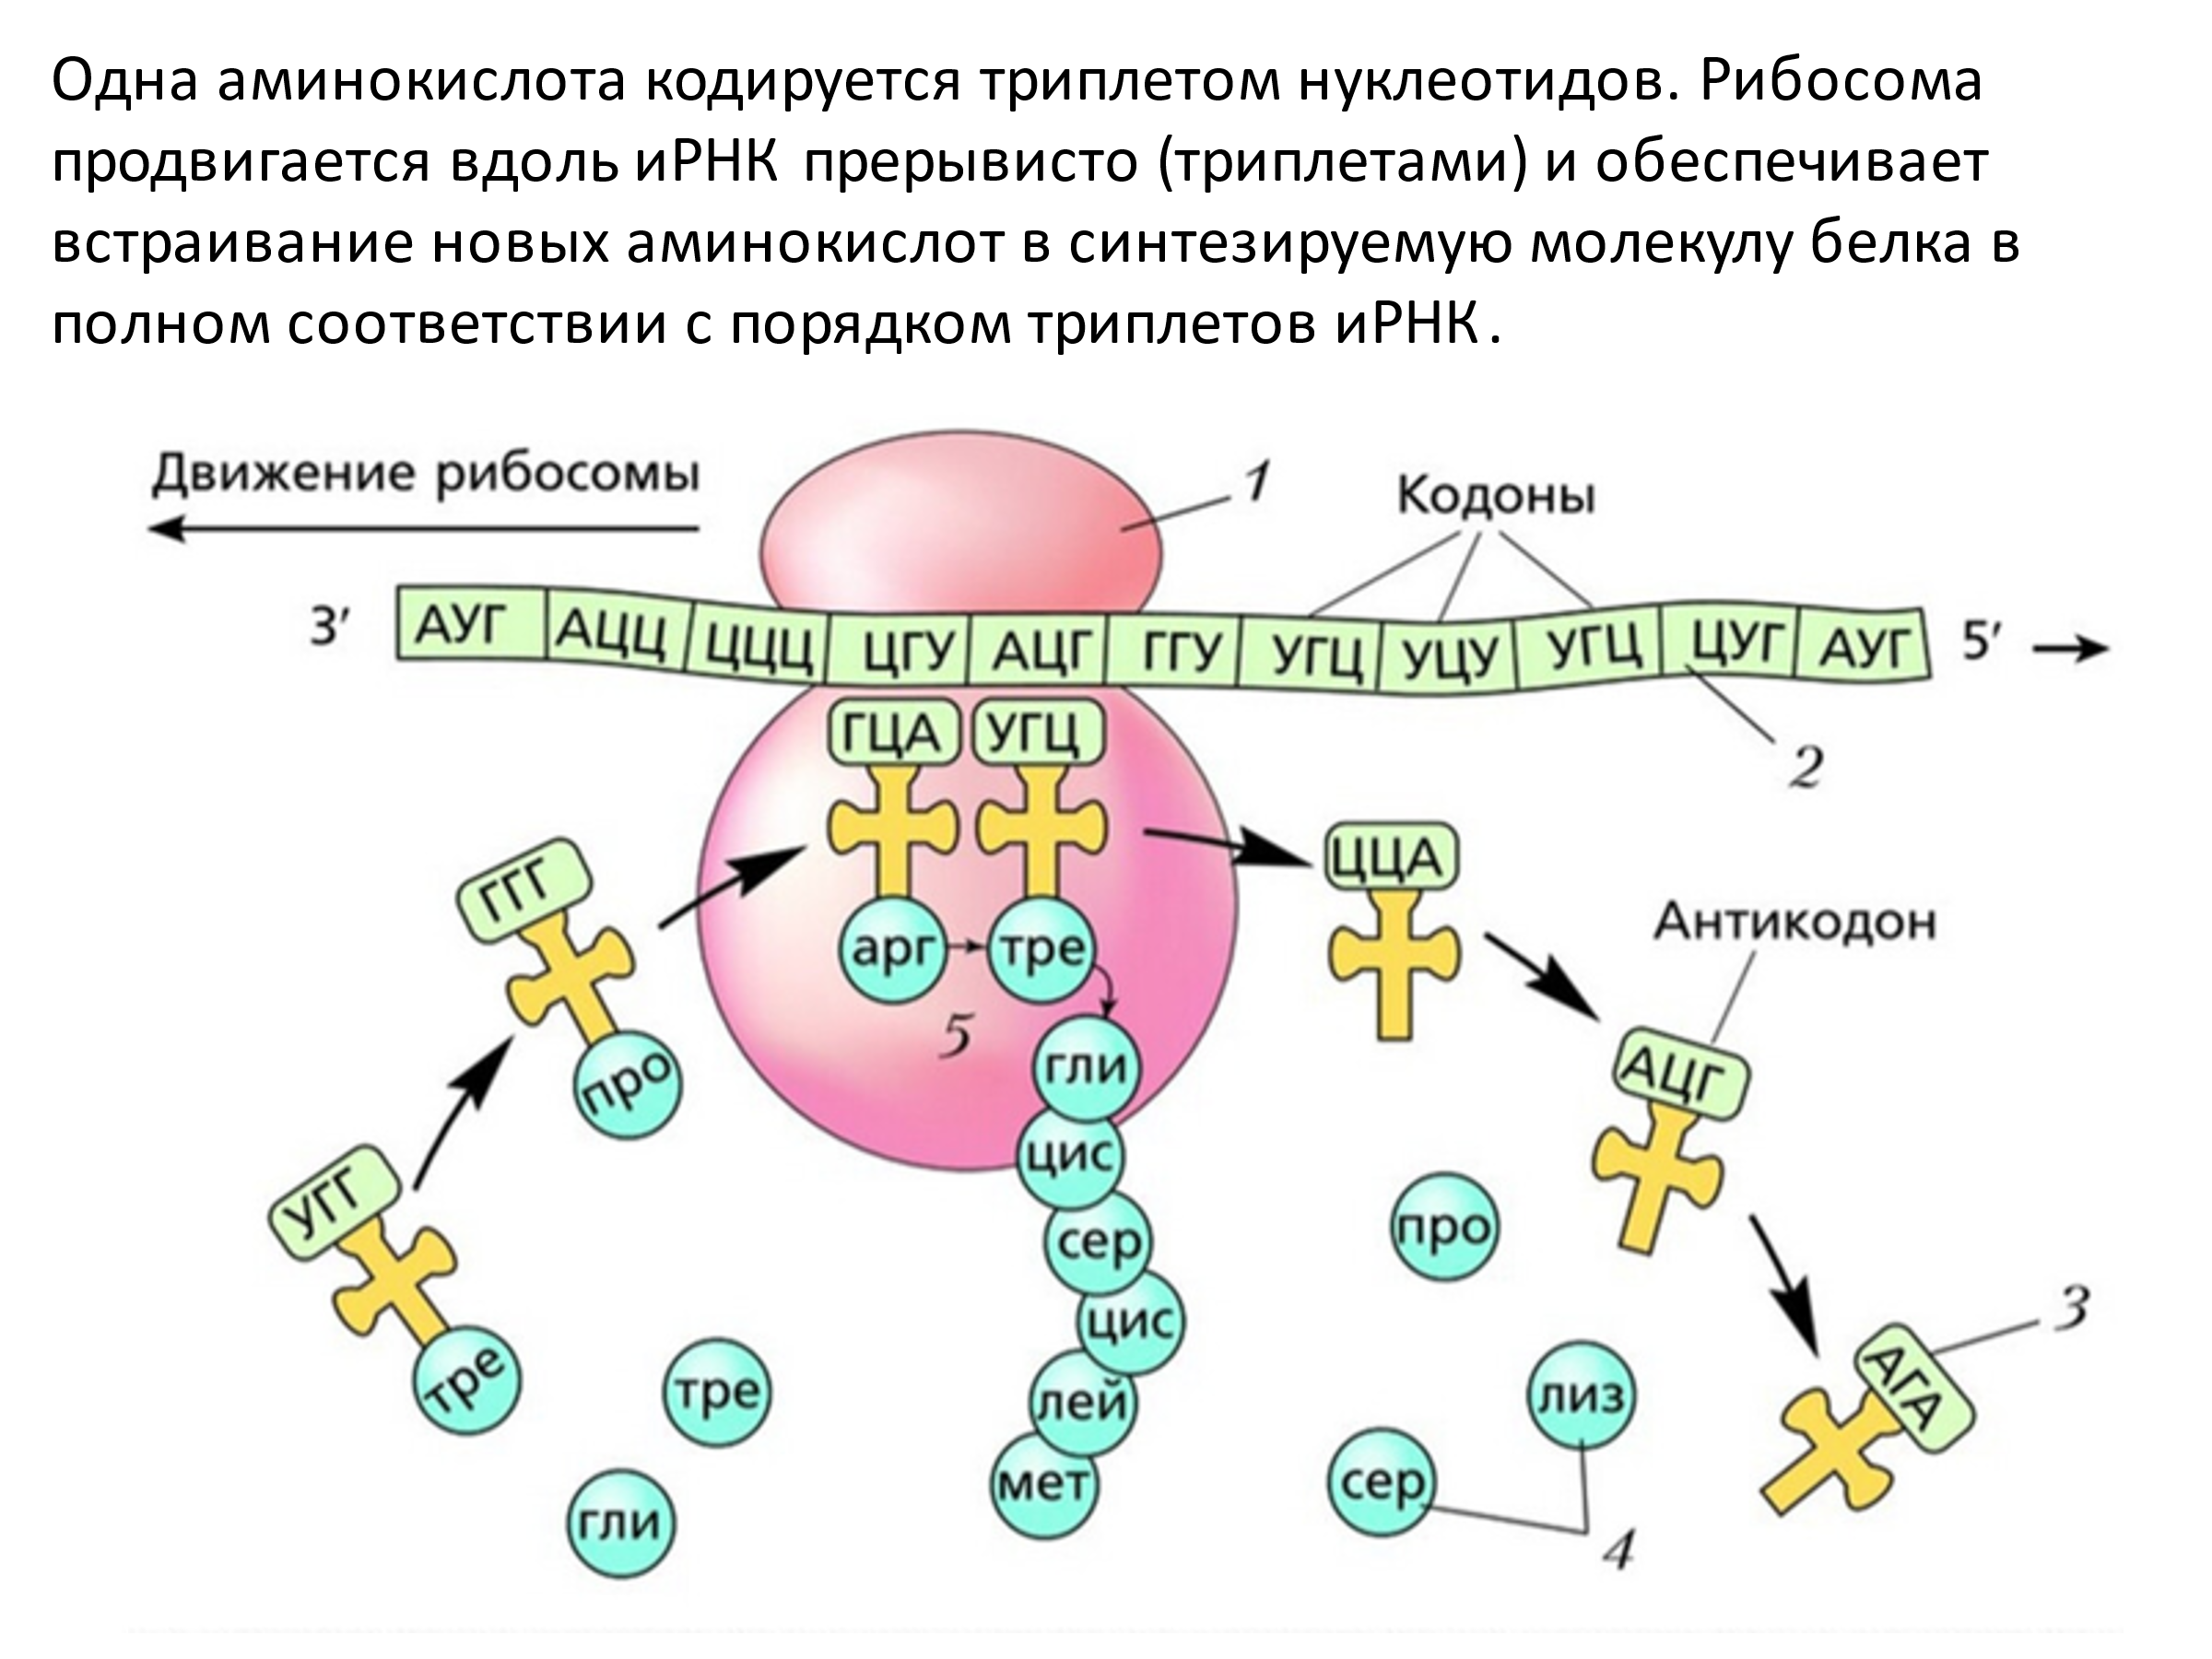 Синтезирующийся полипептид. Трансляция Биосинтез схема. Процесс синтеза белка на рибосоме схема. Этапы трансляции биосинтеза белка схема. Схема синтеза белка в рибосоме трансляция.